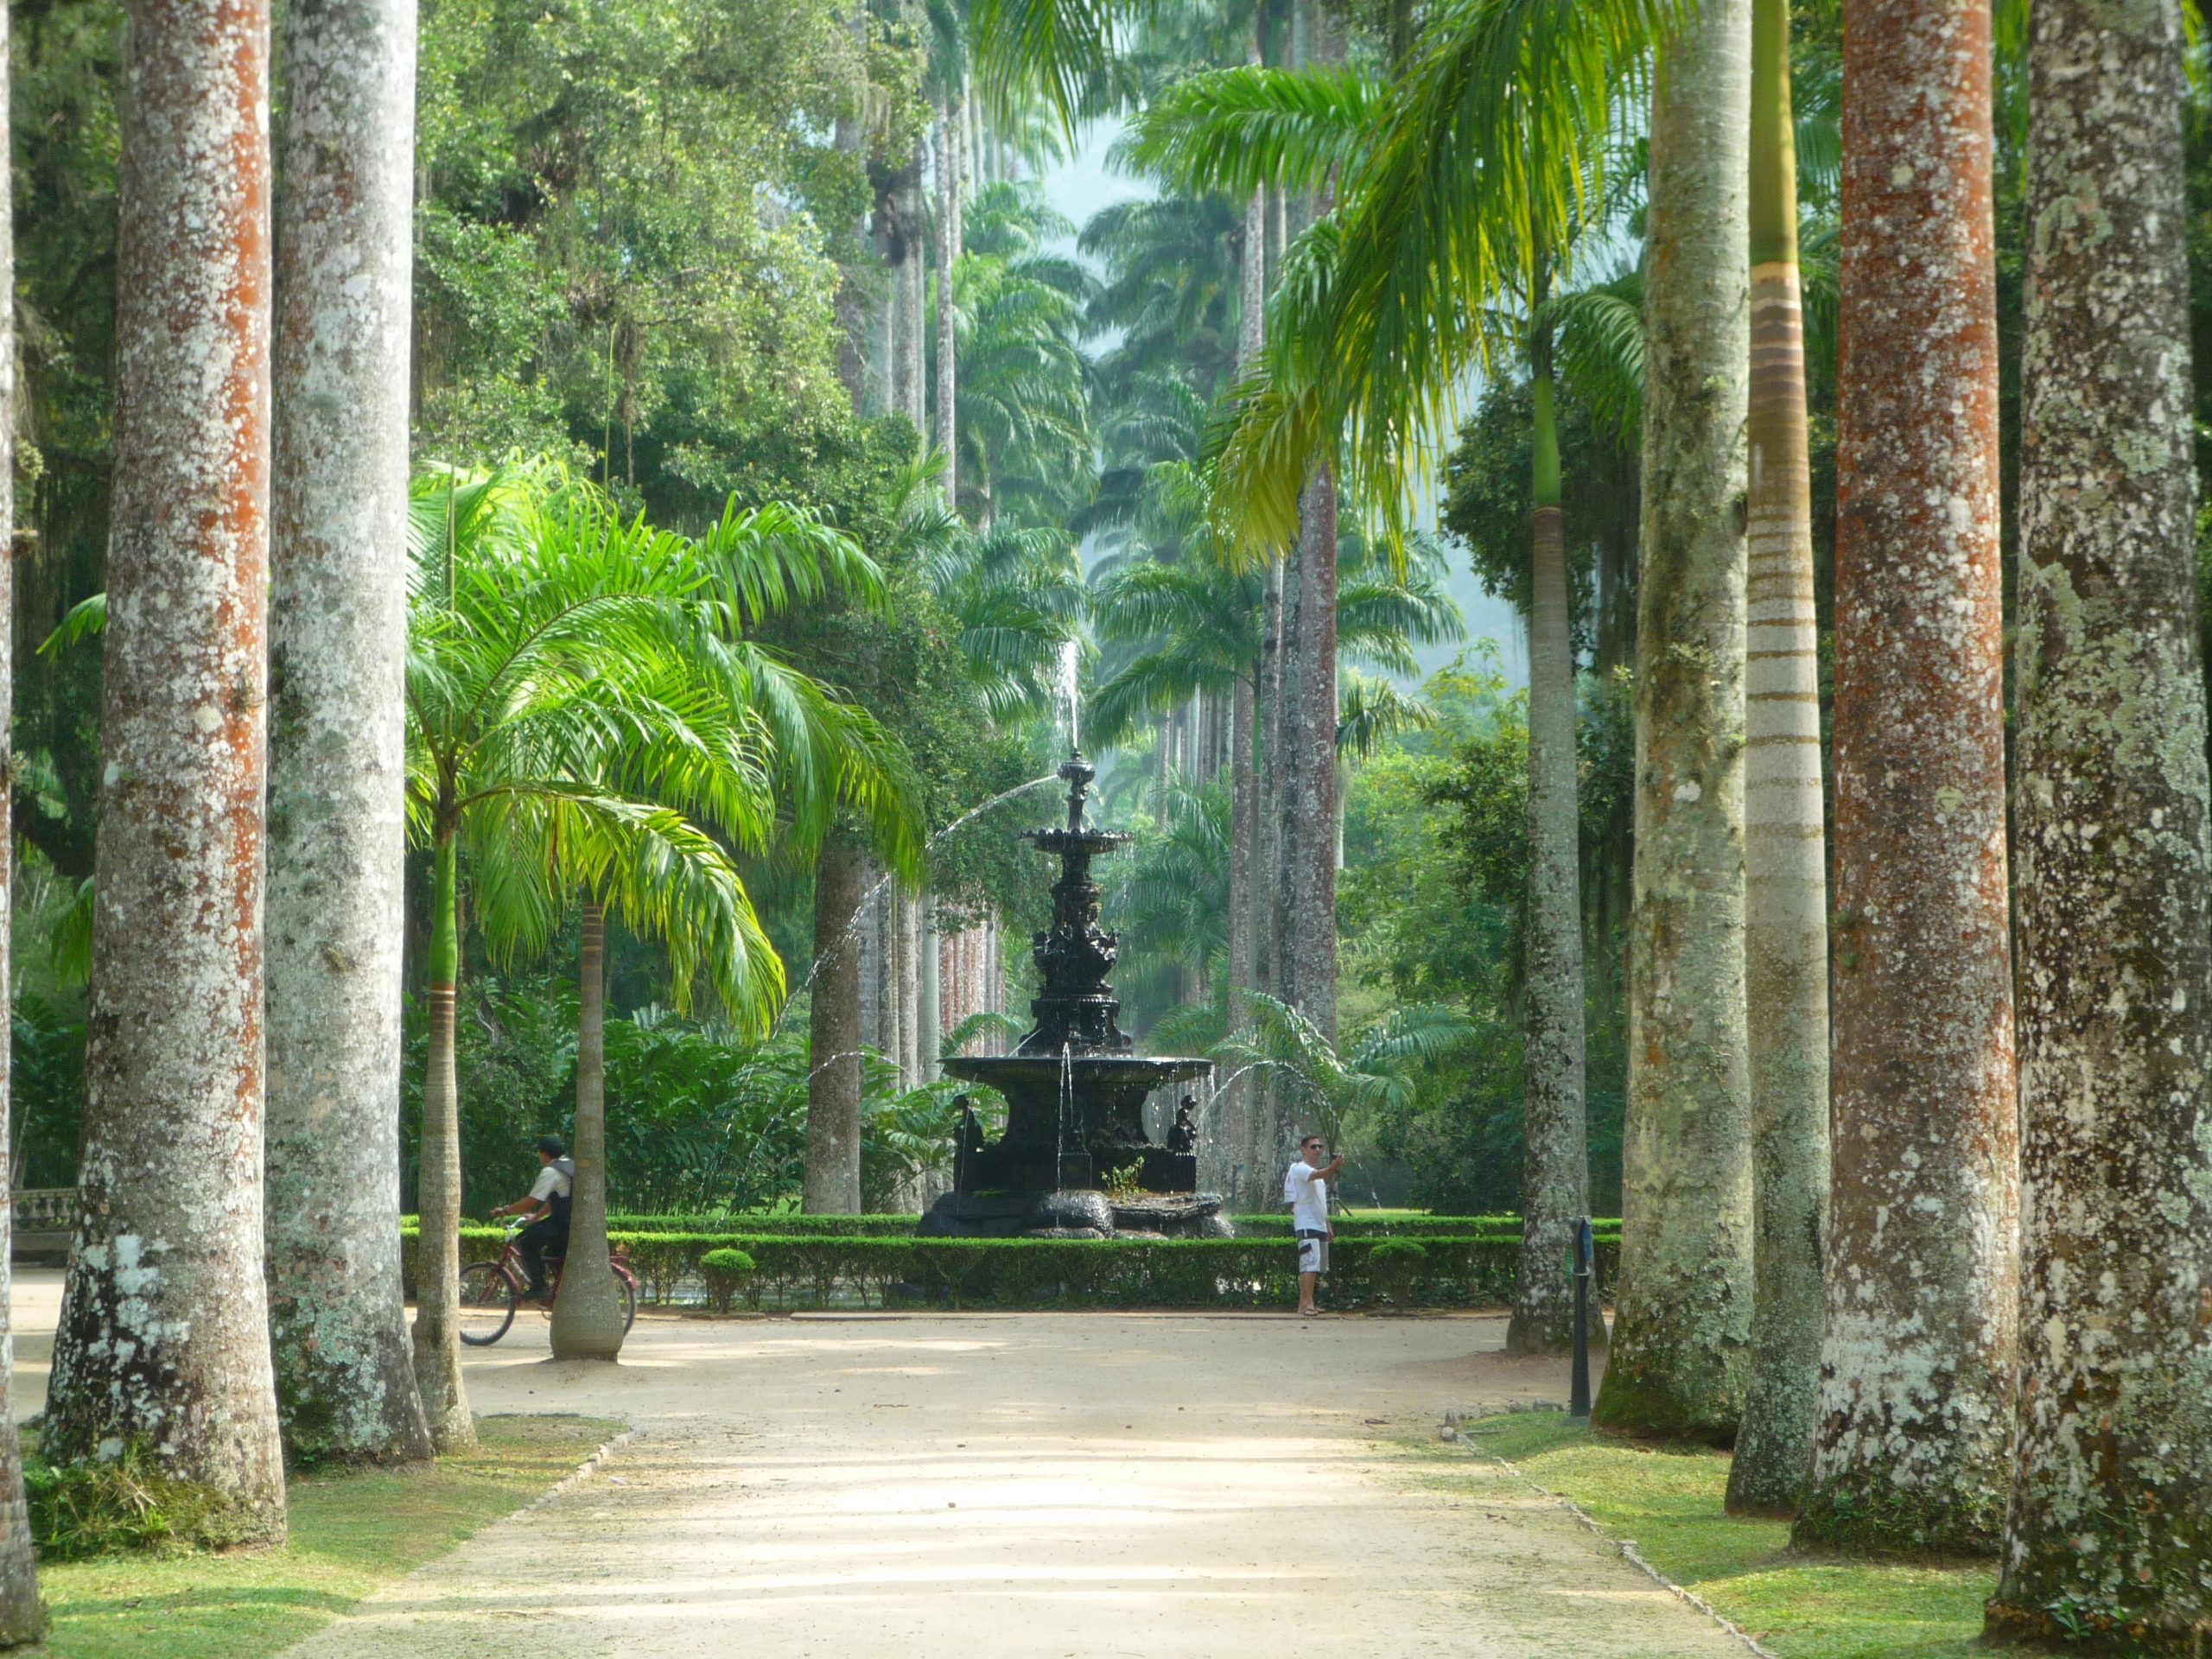 Jardim botanico de Rio de janeiro - Atelier DLV